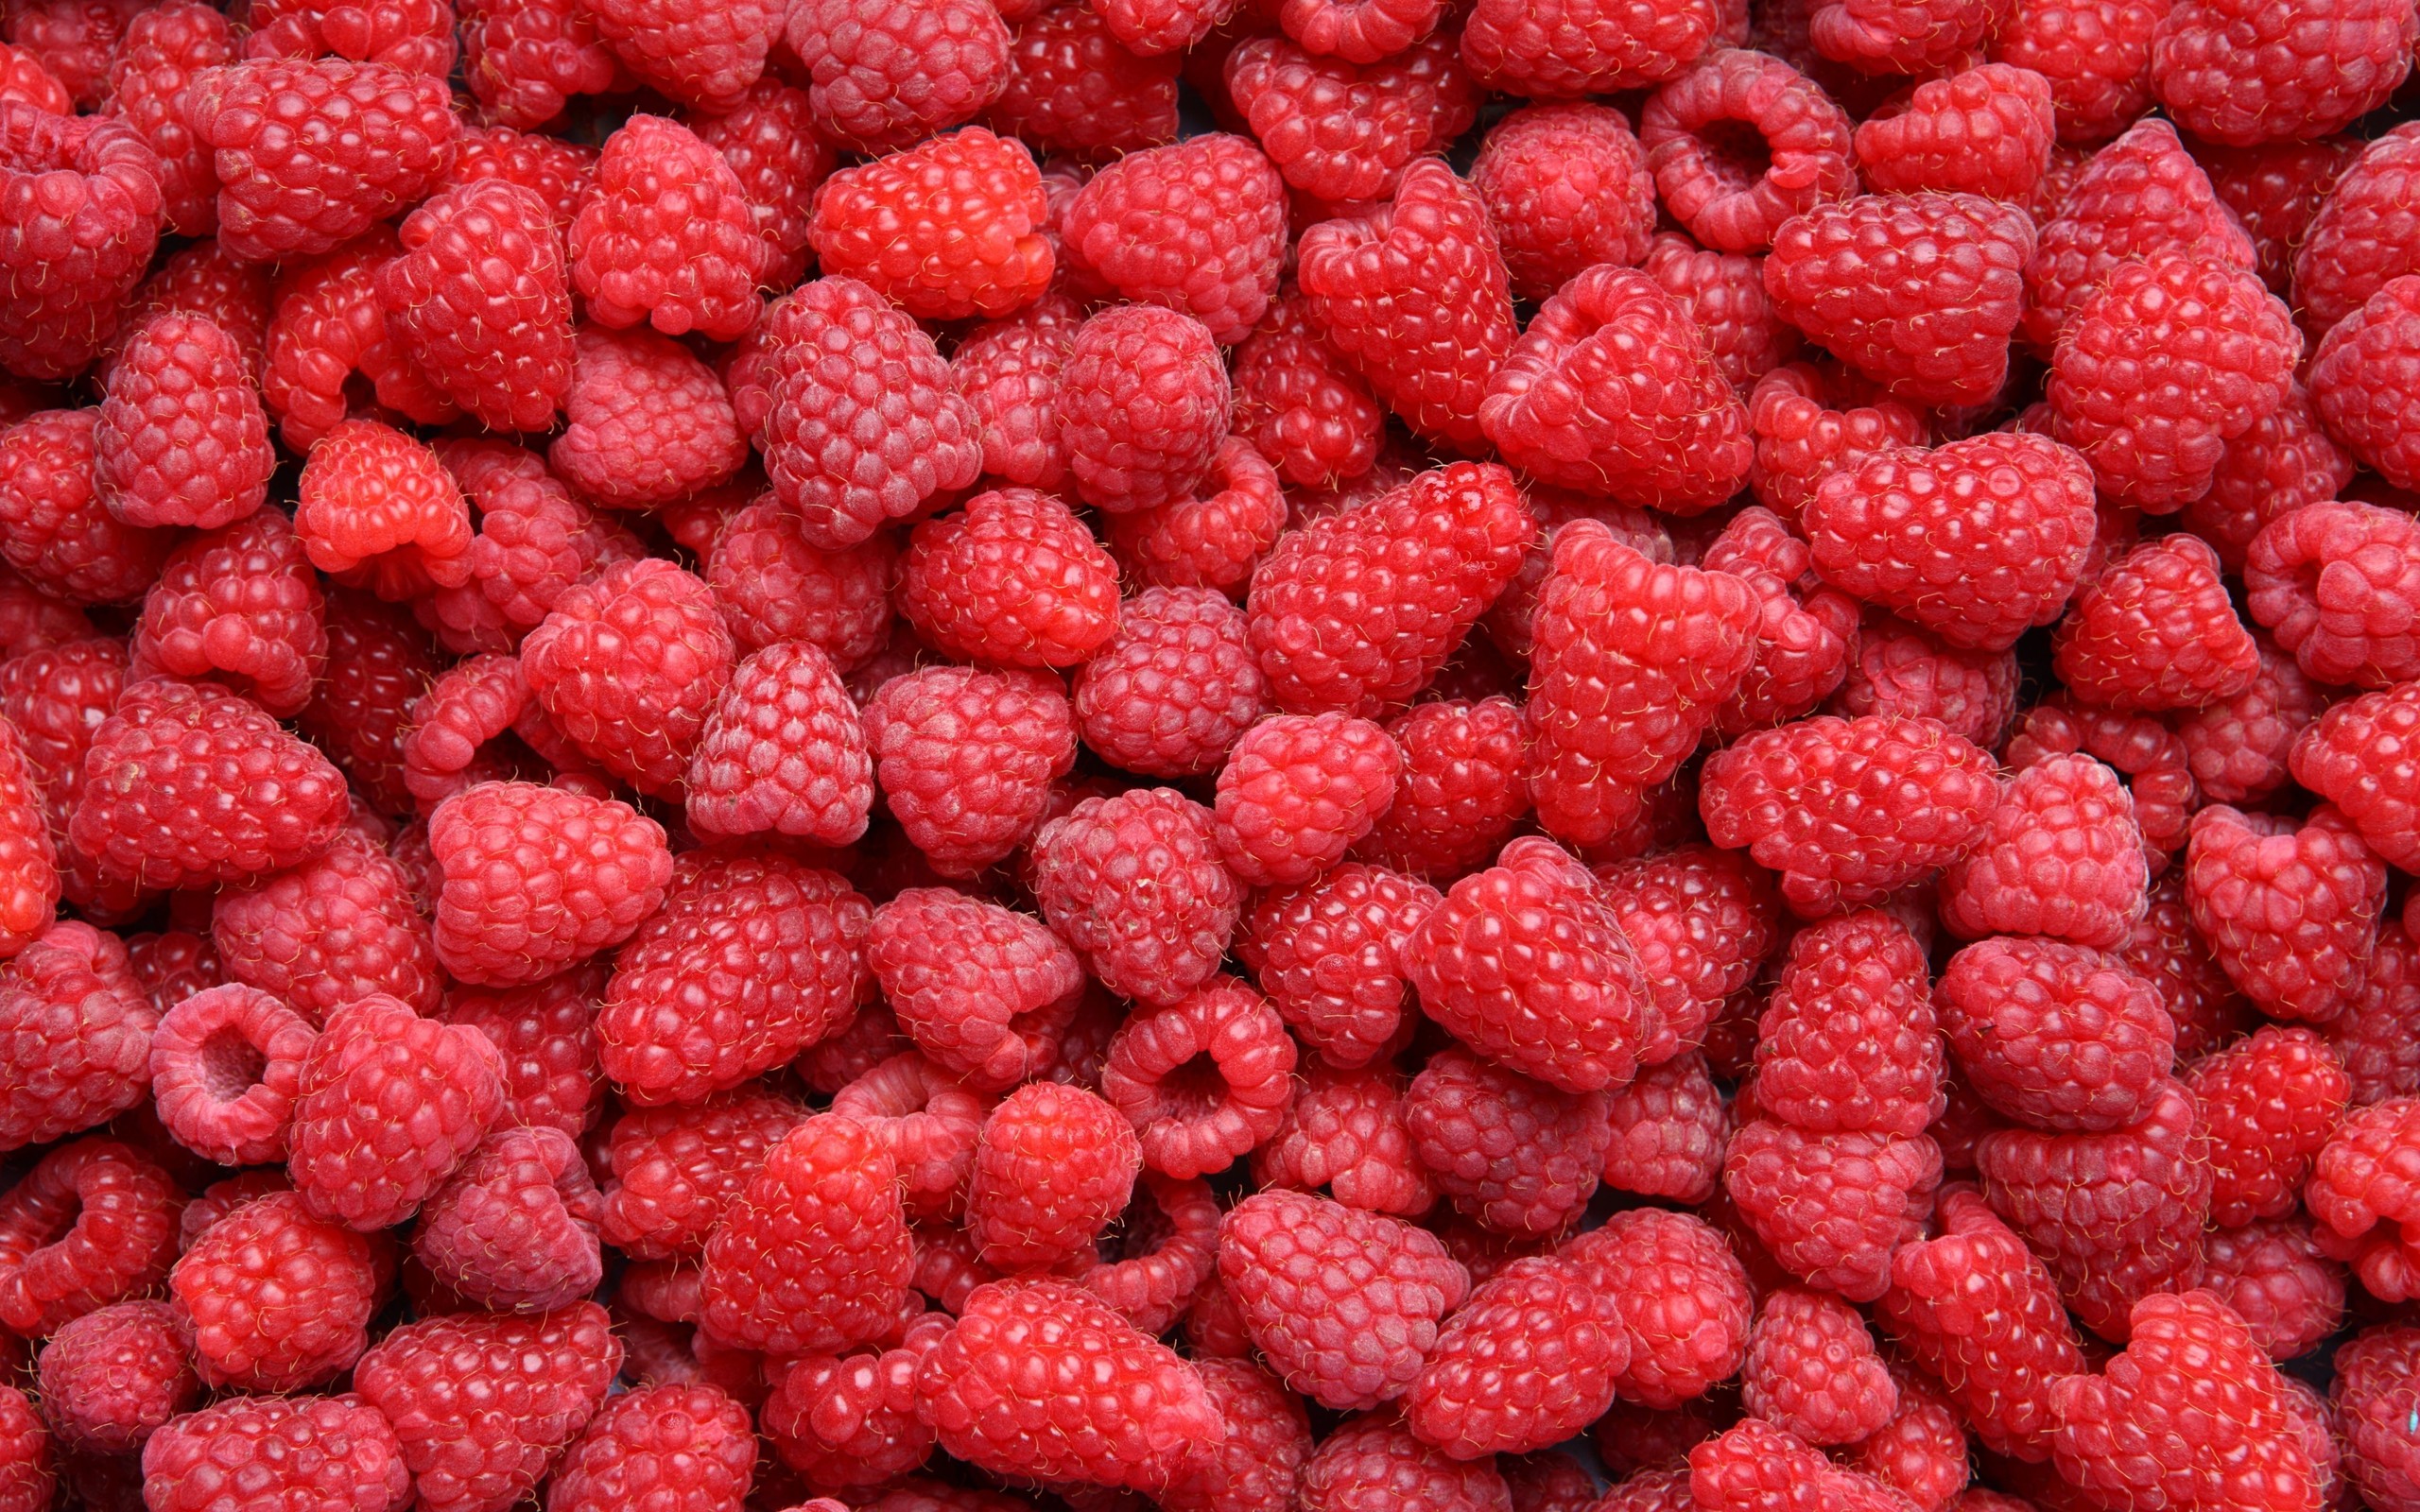 General 2560x1600 pattern fruit food red berries raspberries closeup